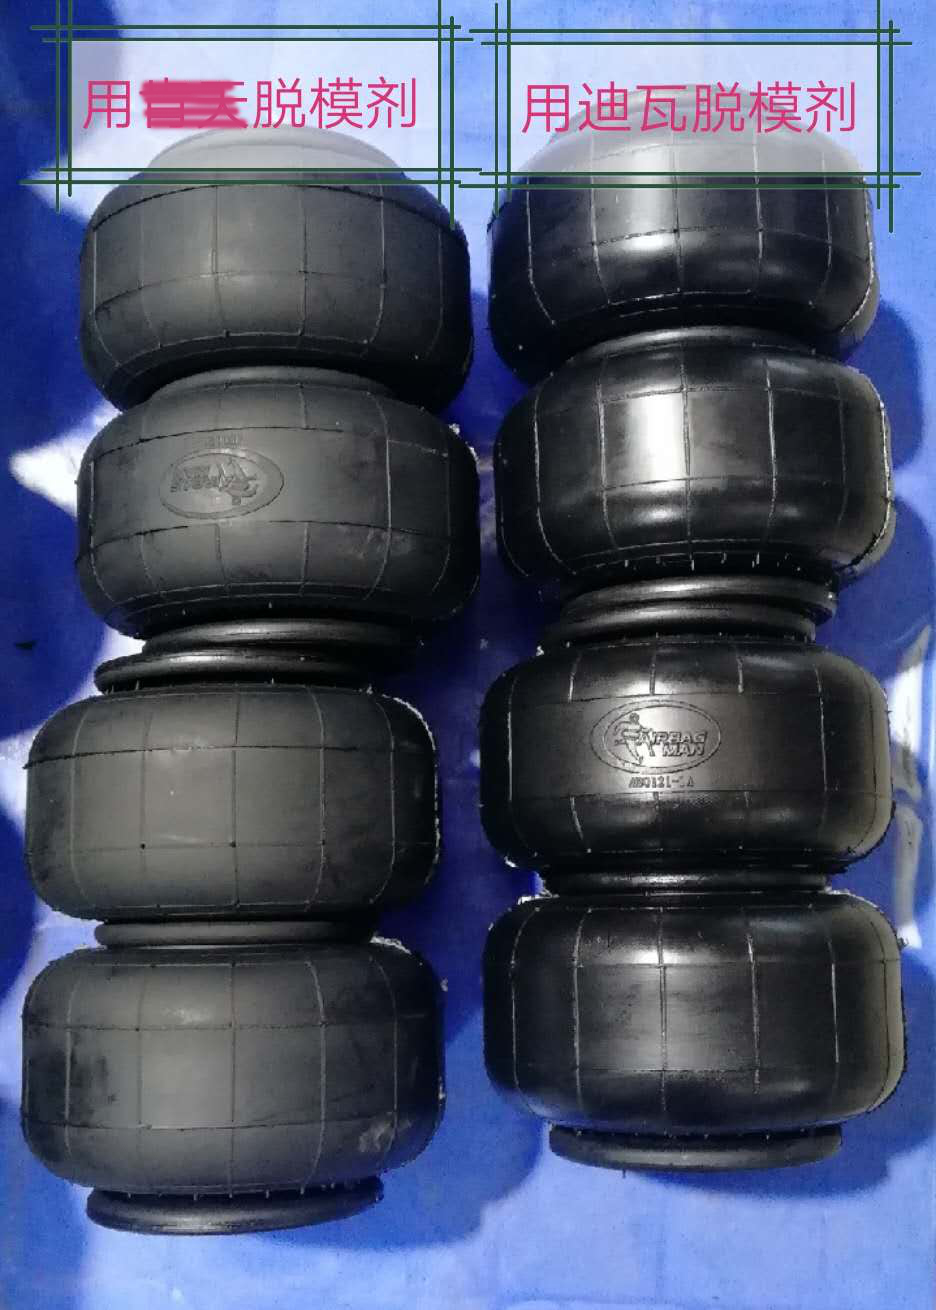 迪瓦橡胶脱模剂在轮胎行业的成功案例